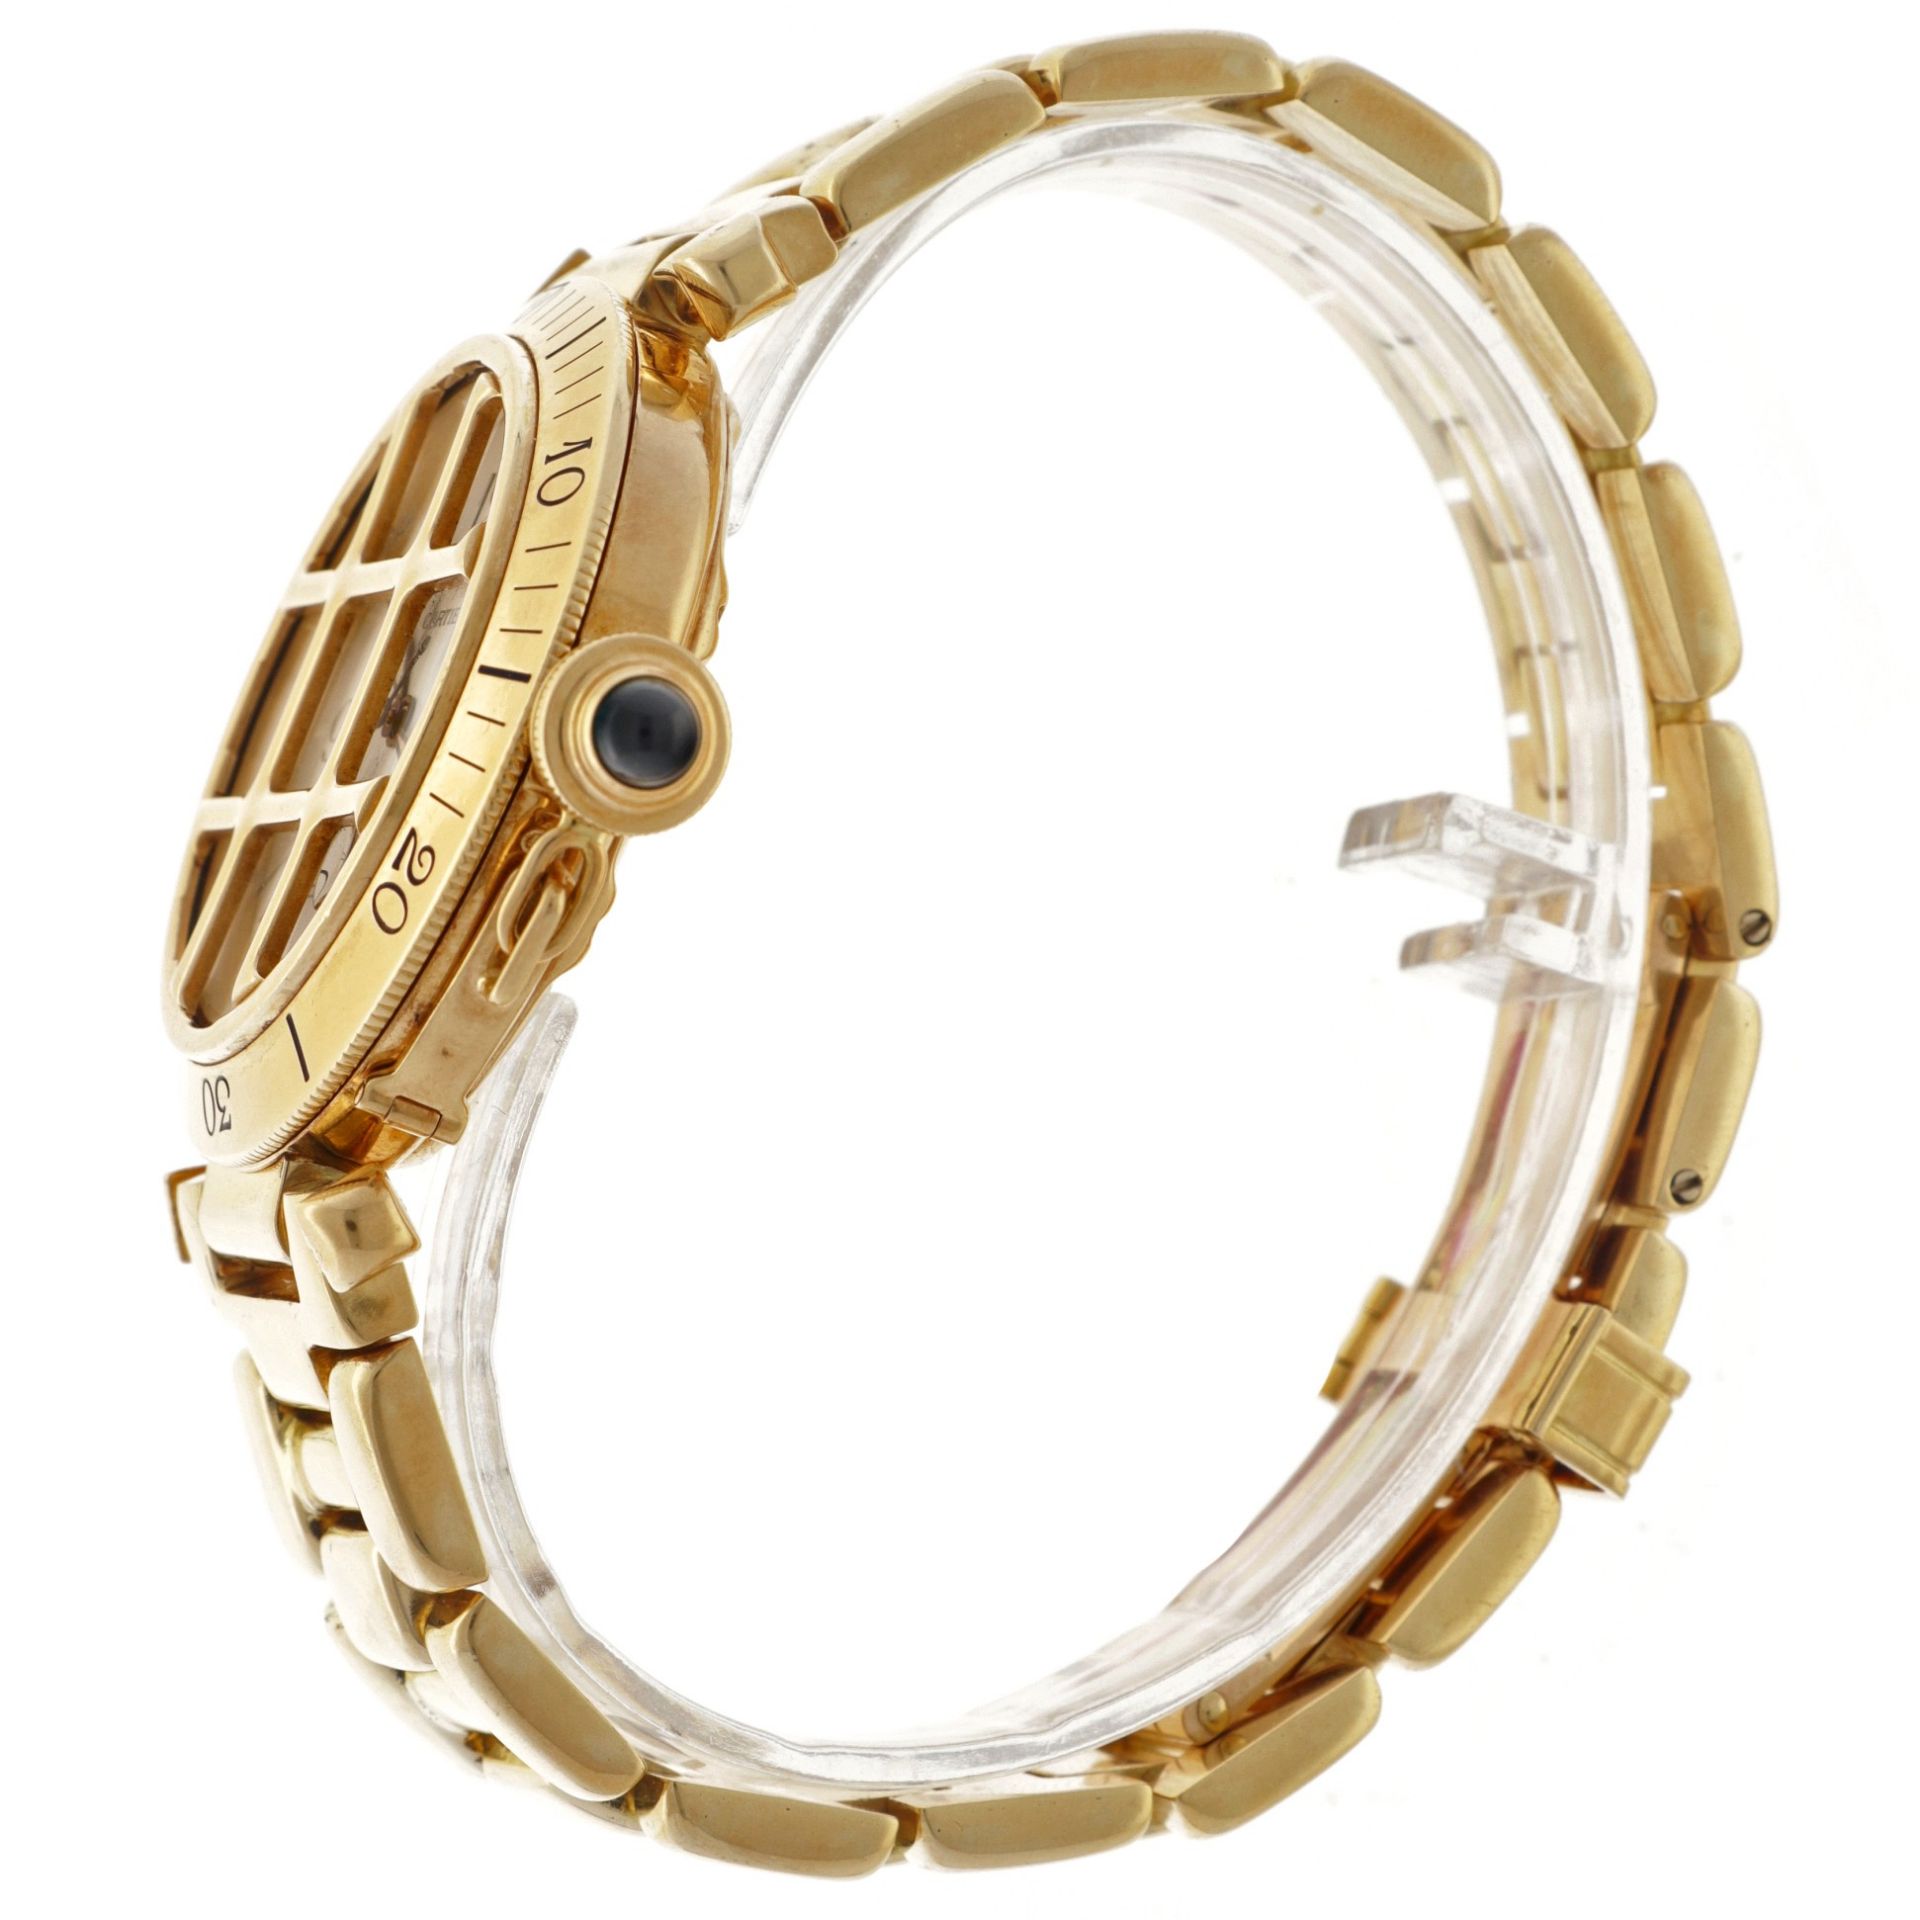 Cartier Pasha 18K. 1021 1 - Men's watch.  - Image 5 of 5